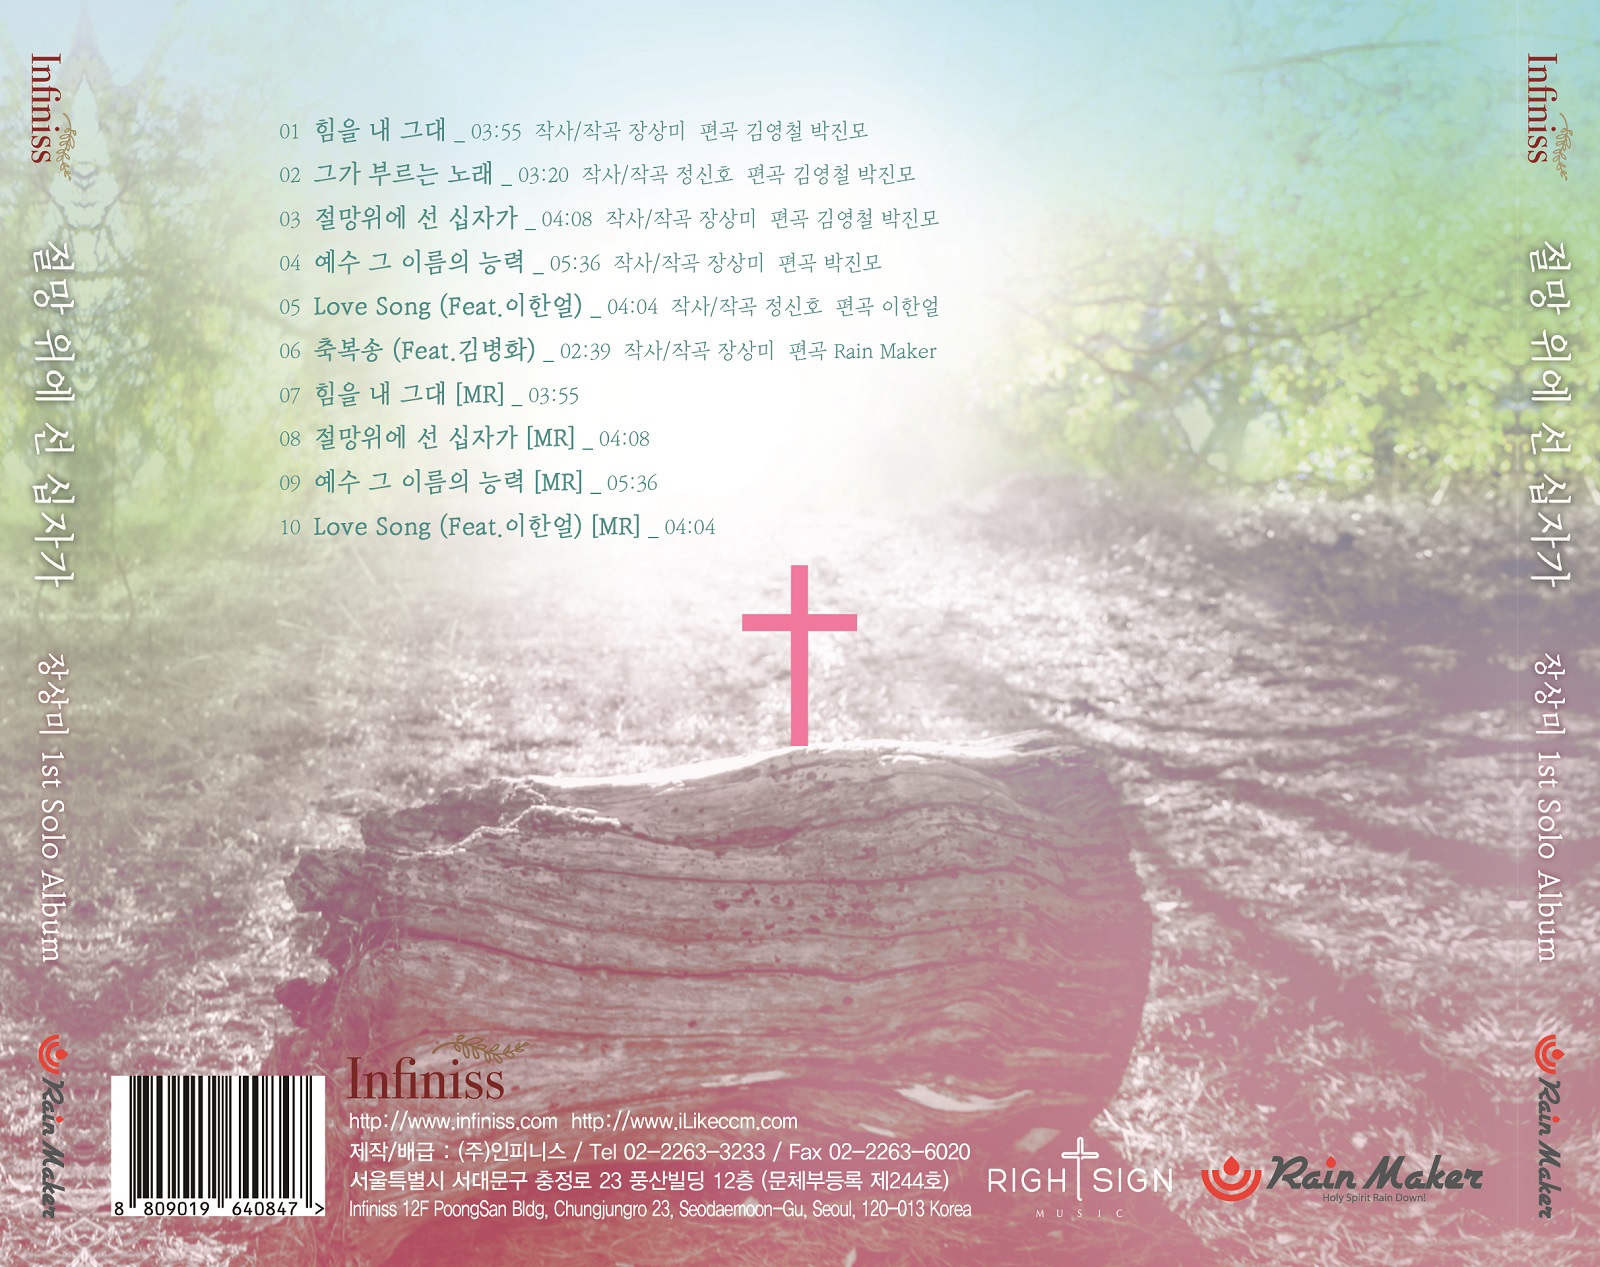 장상미 1집 - 절망 위에 선 십자가 (CD)